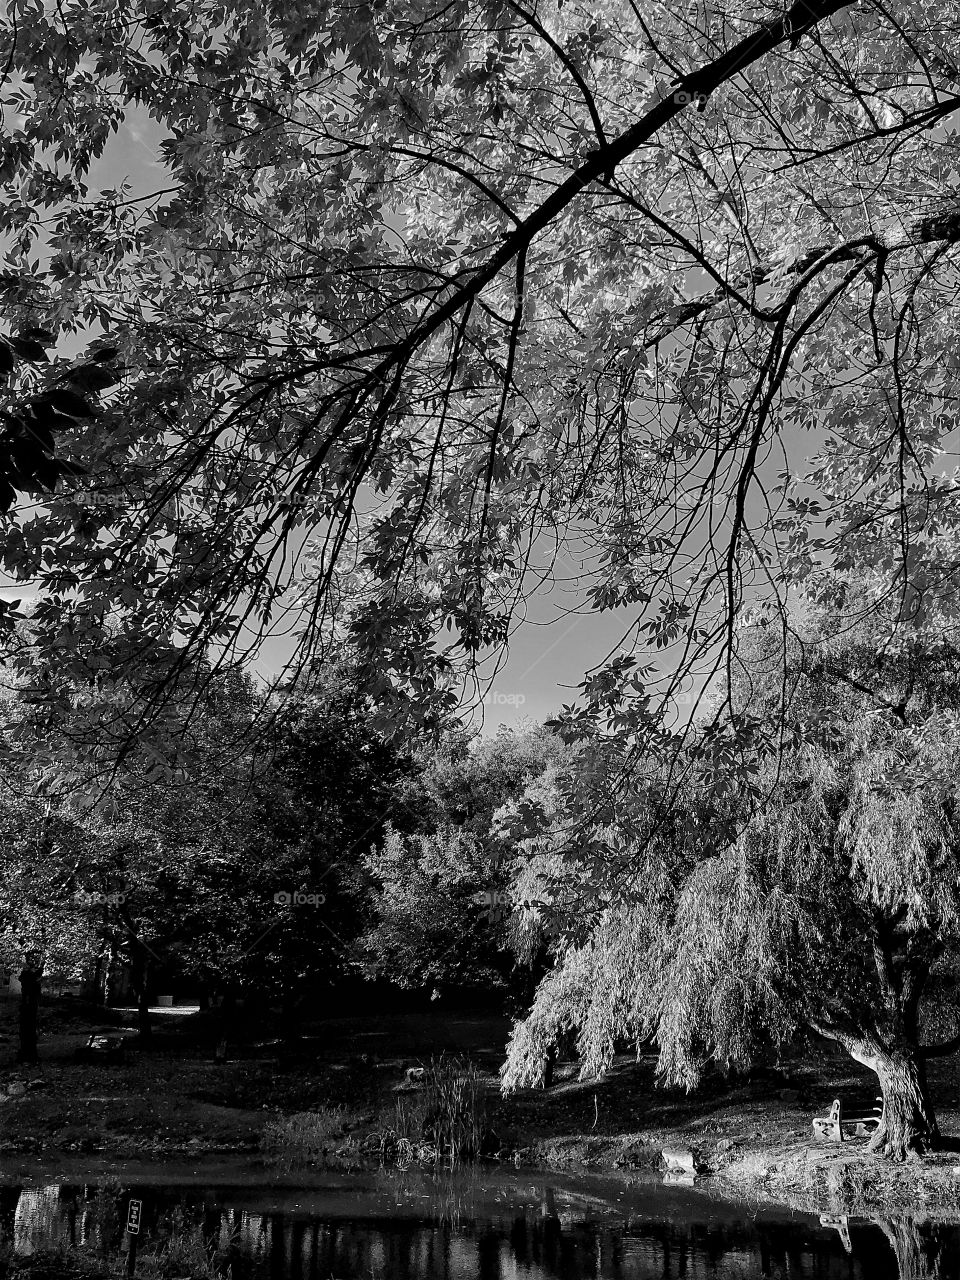 Backlit trees